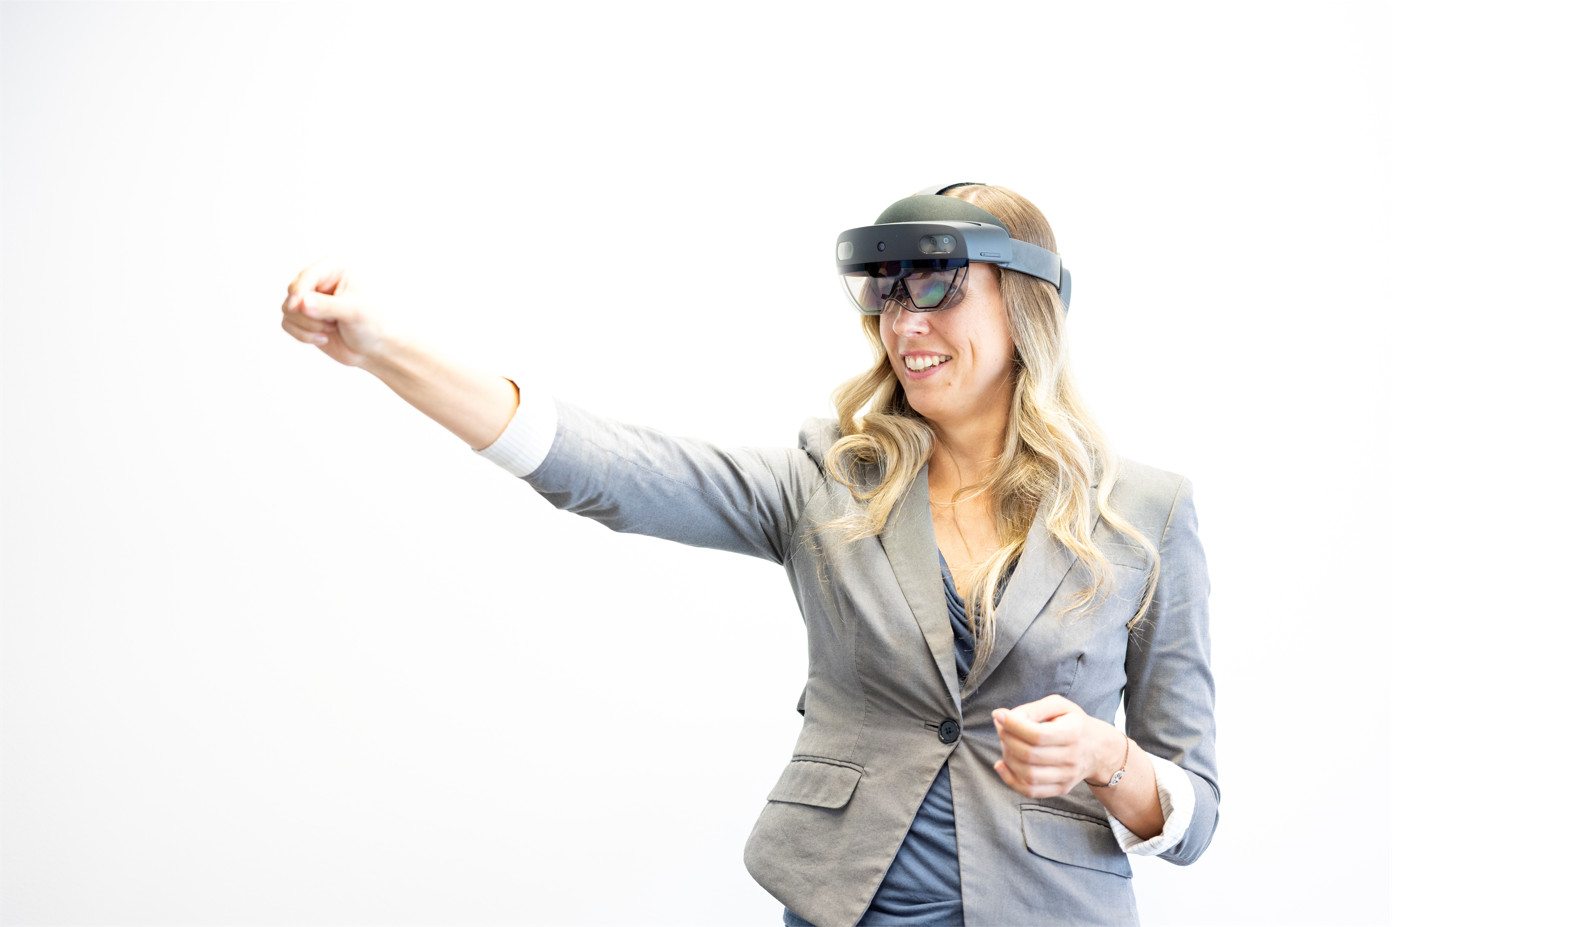 Forscherin mit Augmented Reality-Brille zeigt mit deResearcher wearing augmented reality glasses points her index finger to the left.m Zeigefinger nach links